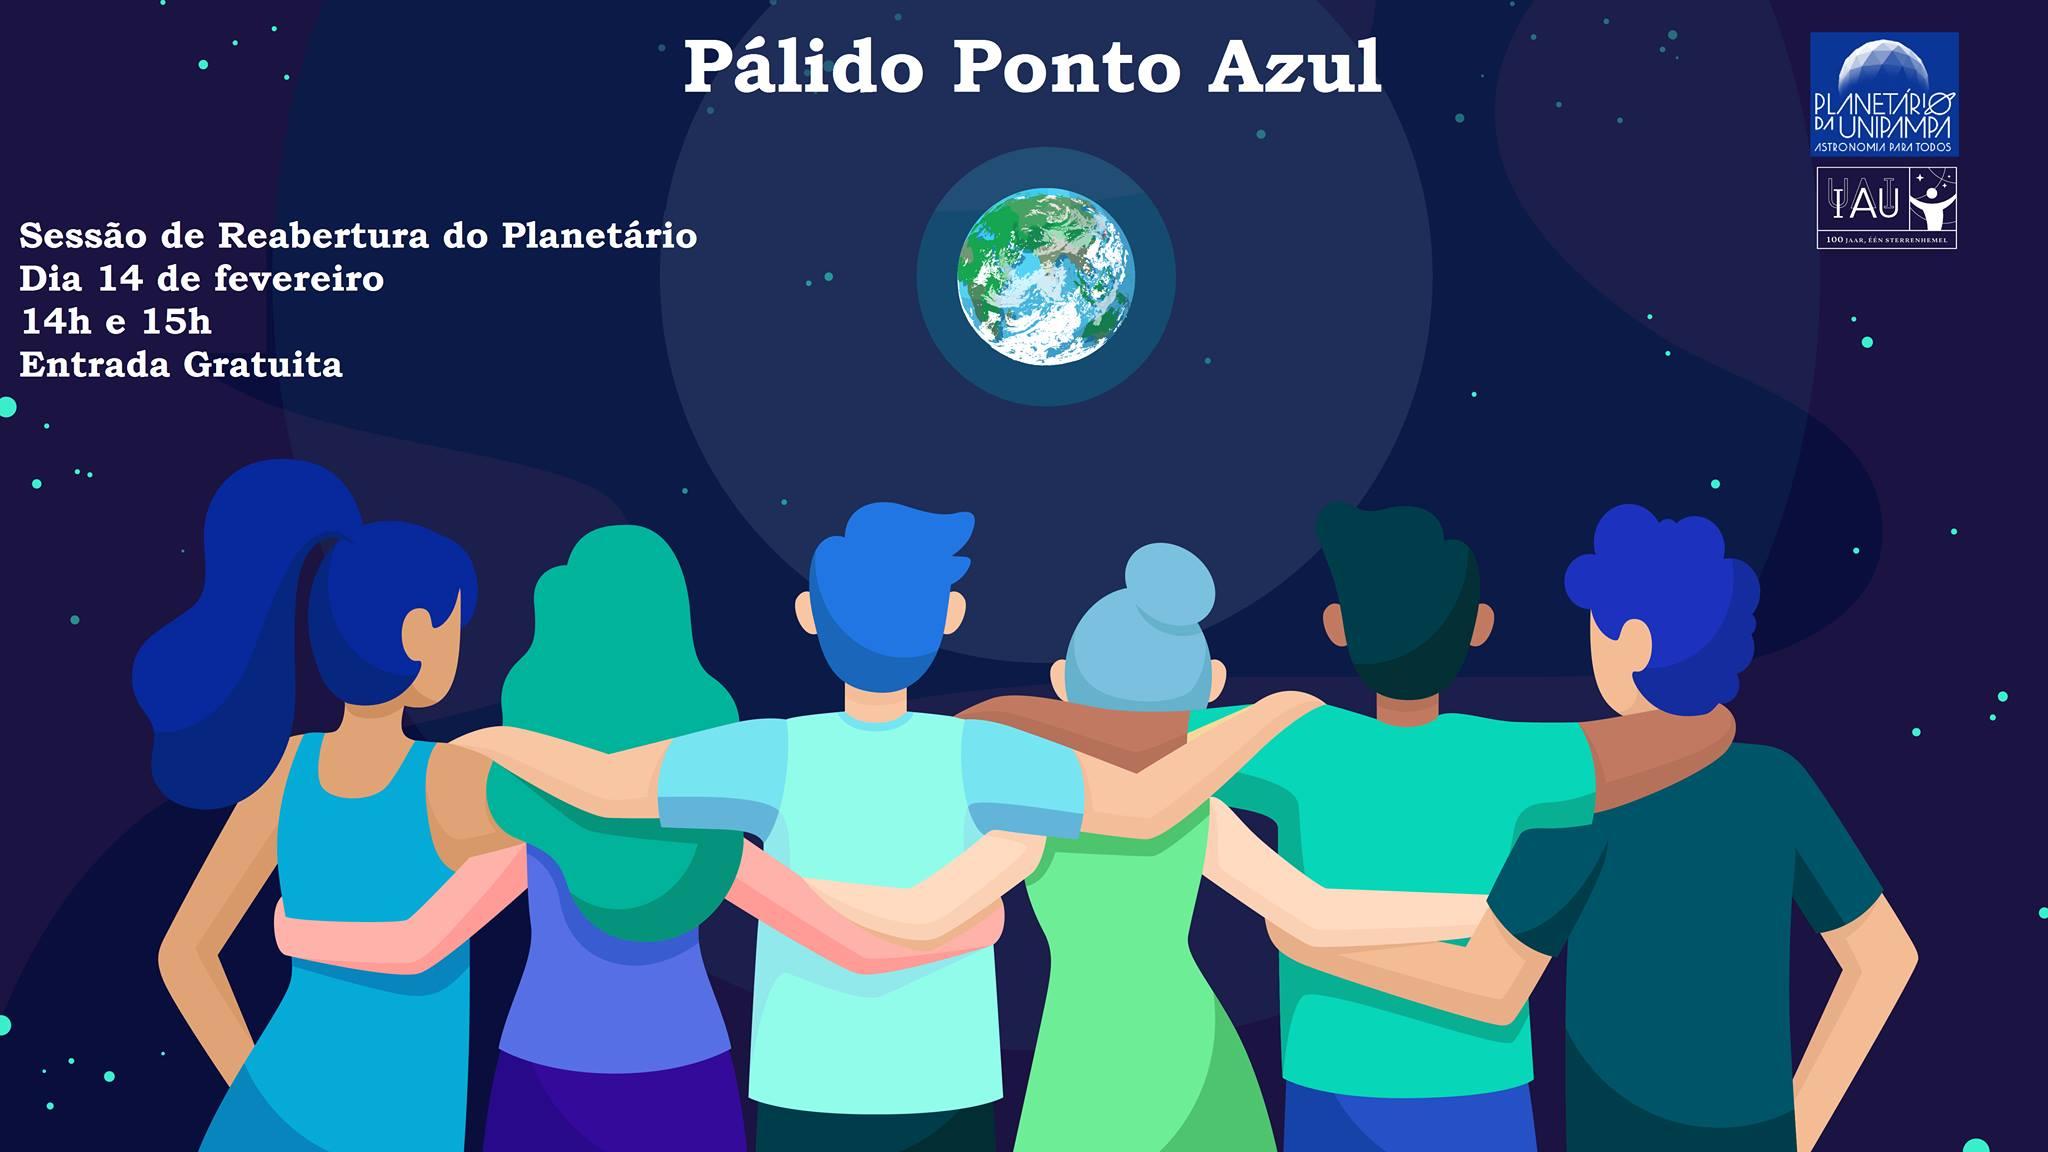 cartaz da sessão pálido ponto azul. em desenho, pessoas abraçadas observam a Terra a partir do espaço